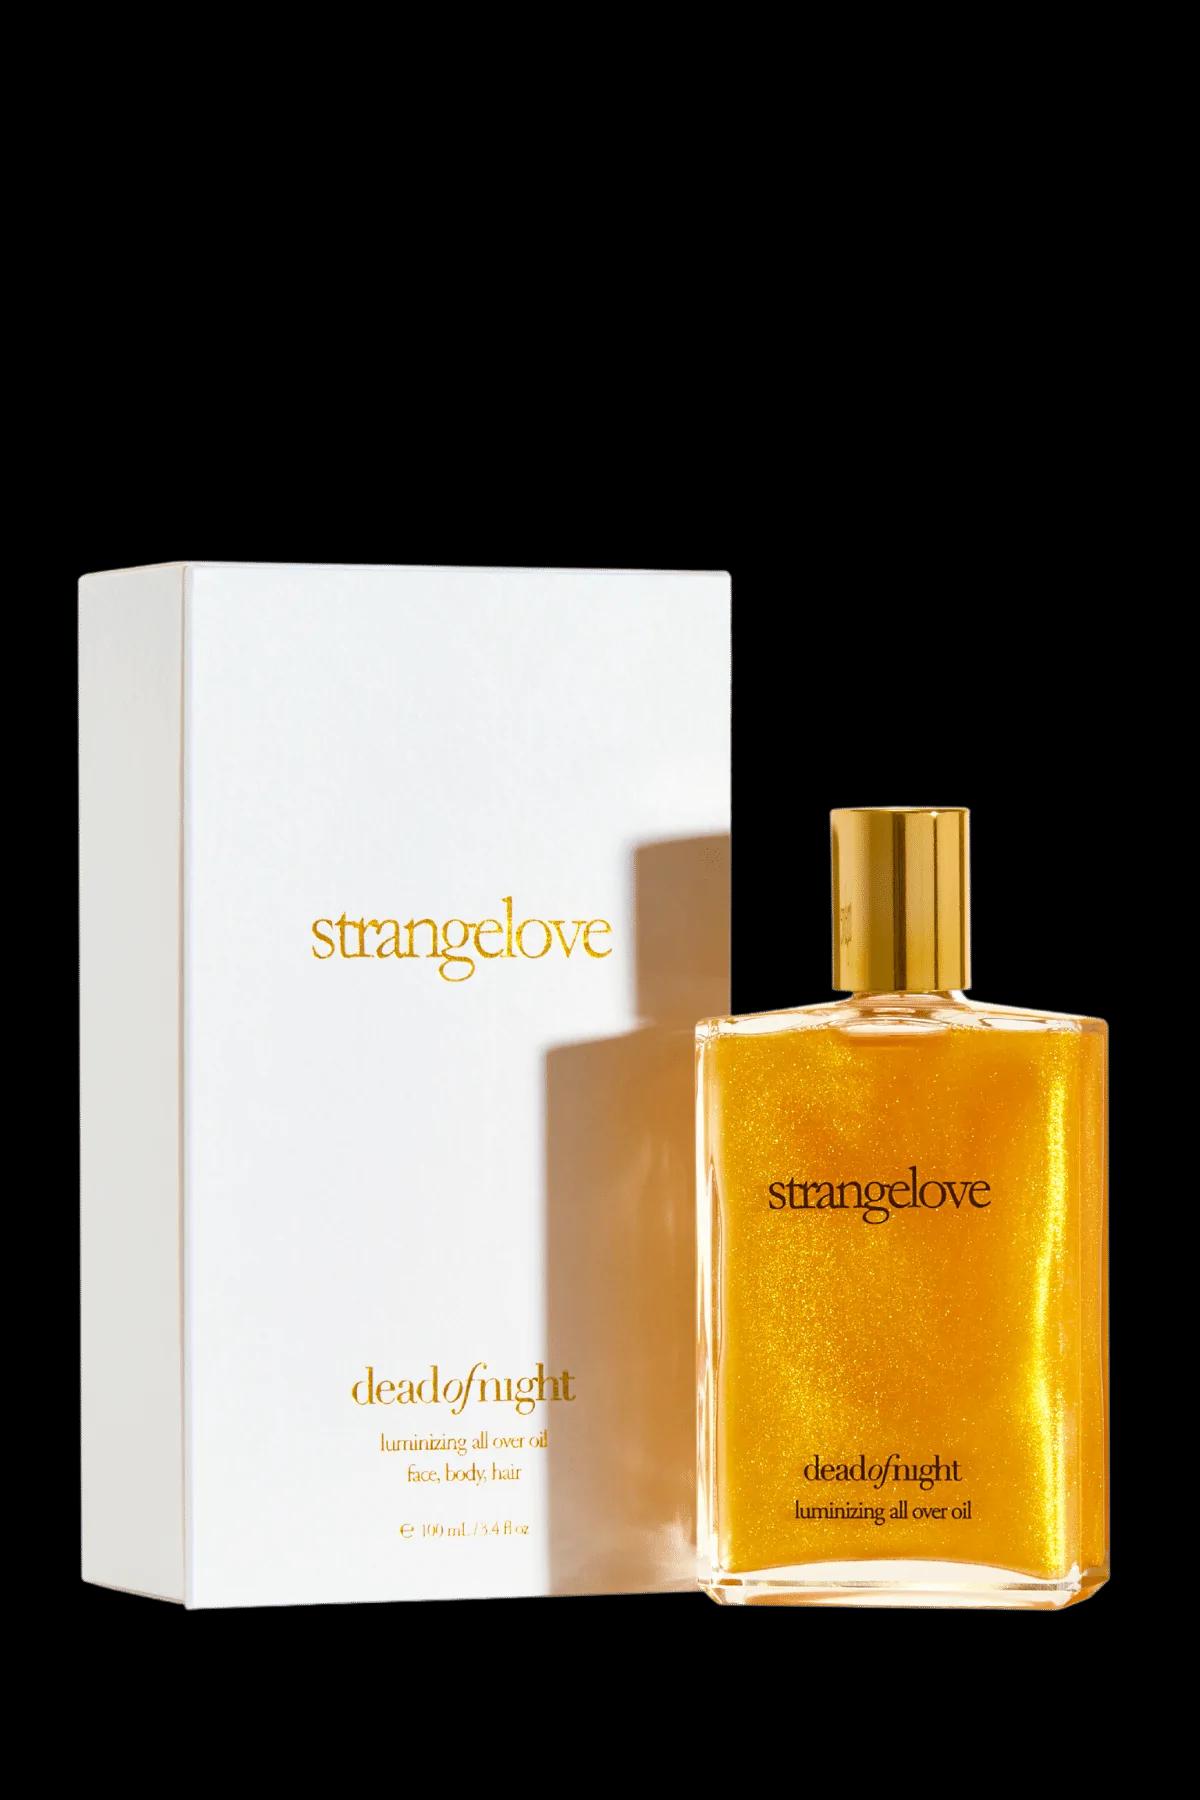 strangelove - deadofnight luminizing all over oil | Perfume Lounge